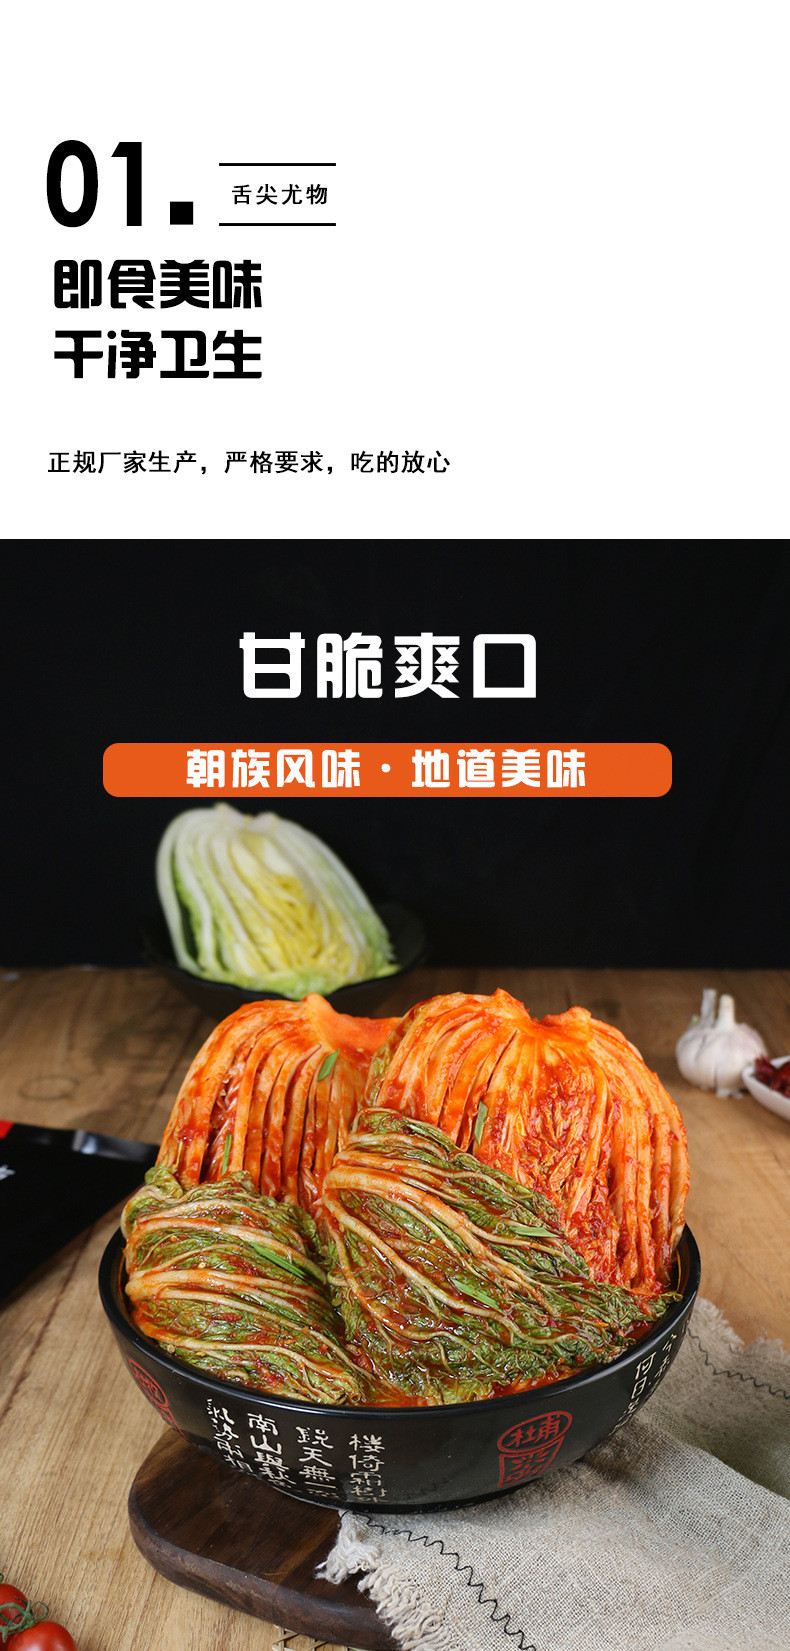 【500g*3包】东北大妈朝鲜族辣白菜 韩式泡菜500克每袋延边韩国泡菜东北咸菜